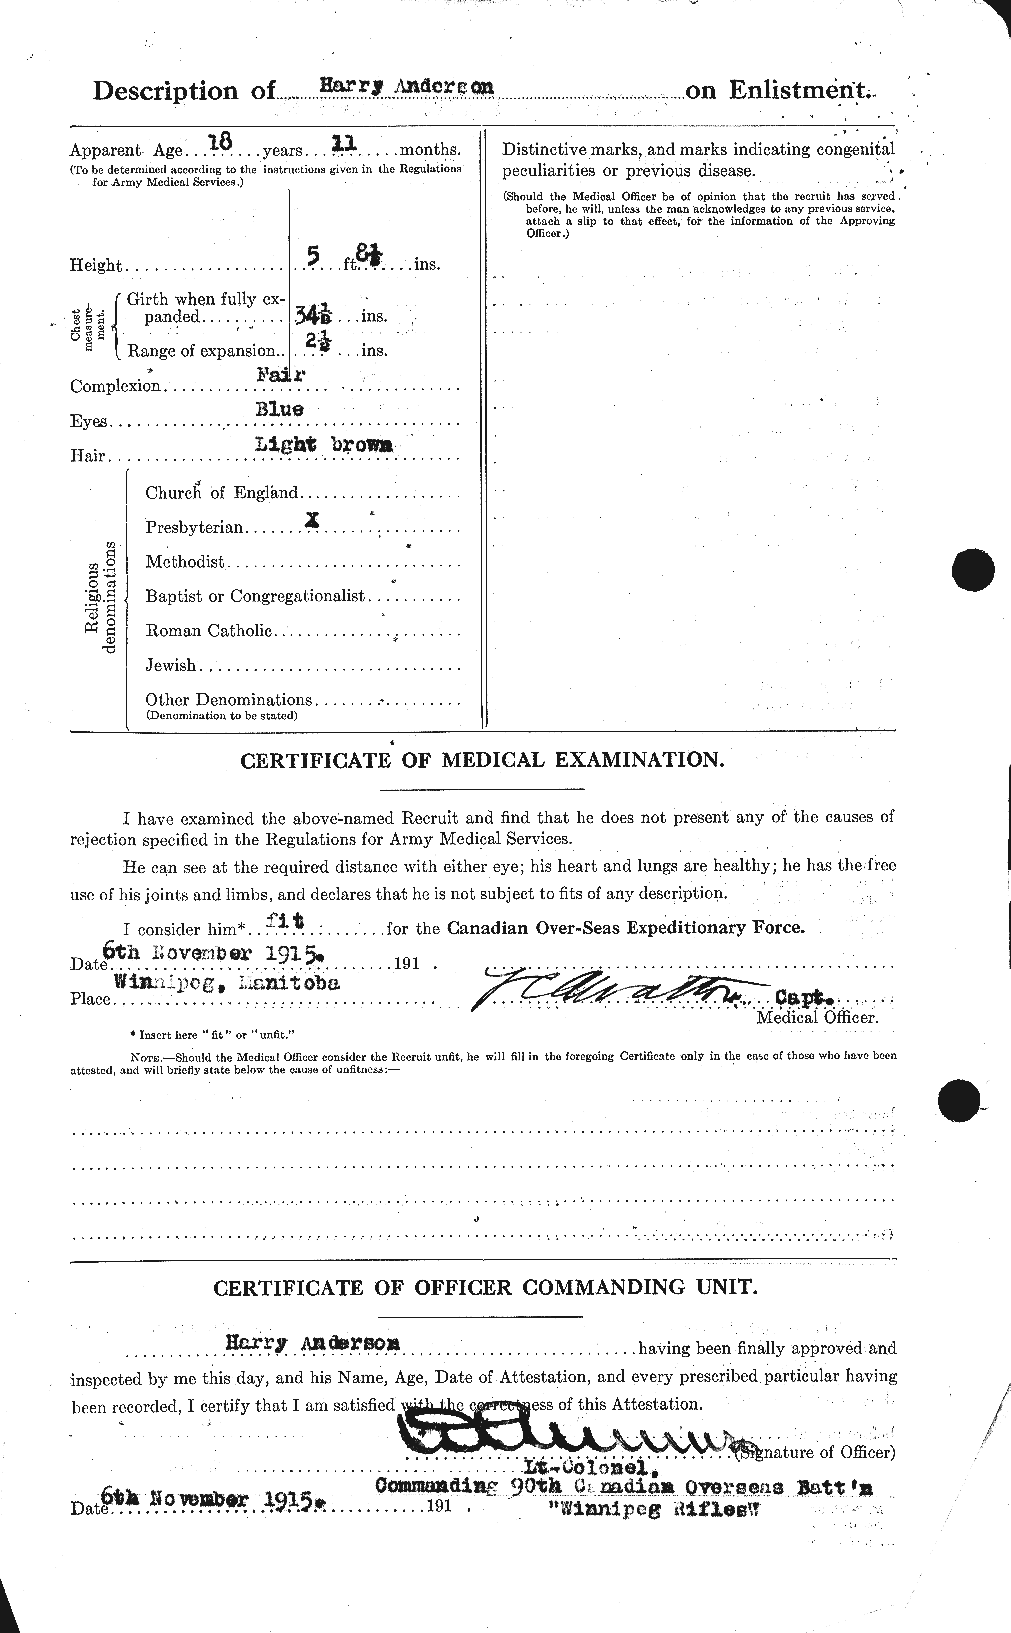 Dossiers du Personnel de la Première Guerre mondiale - CEC 213279b